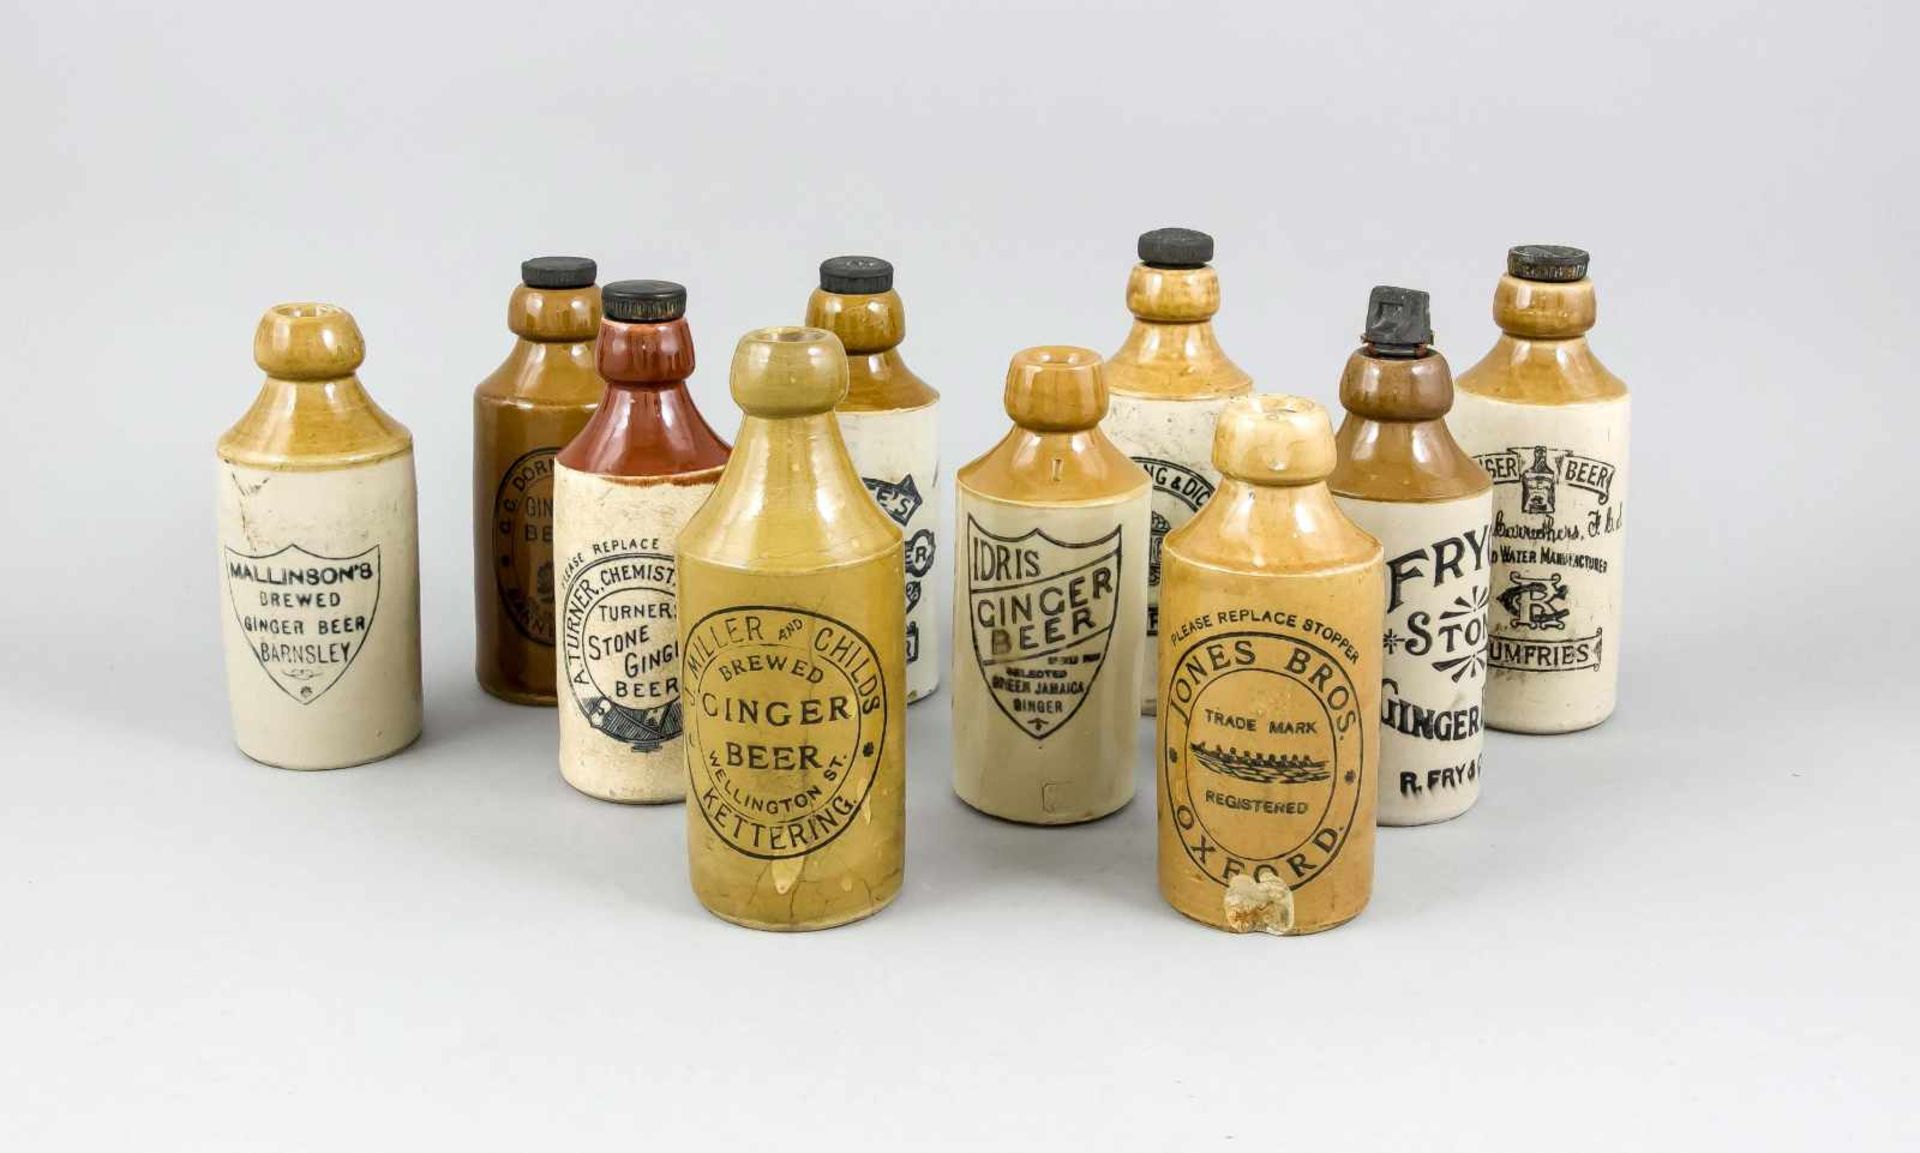 10 Gingerbeer Bottles, England, um 1900, Steinzeug mit Glasur, unterschiedliche Marken,manche mit